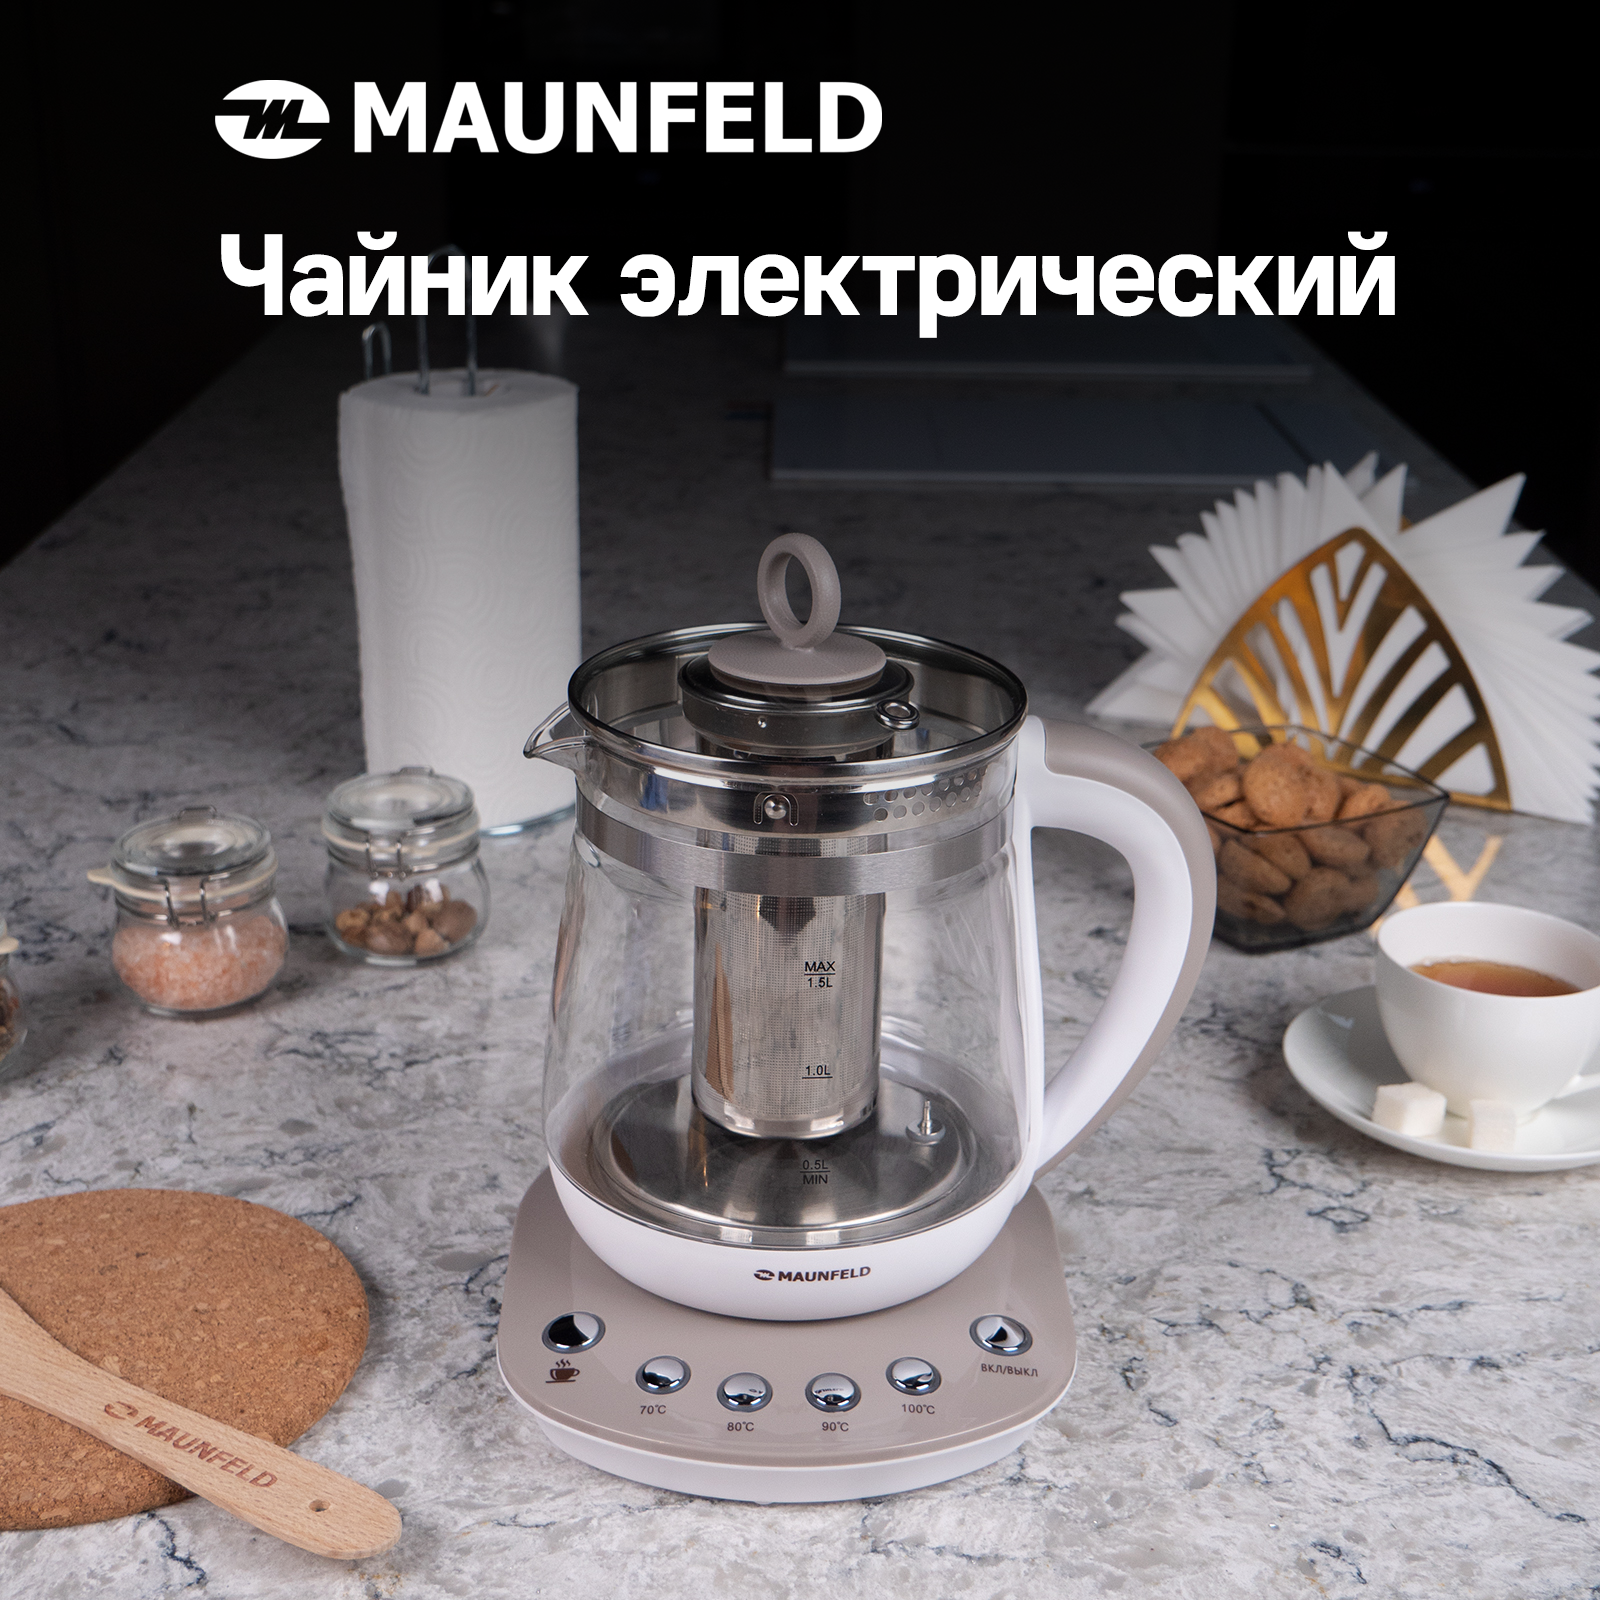 Чайник MAUNFELD MGK-615BG